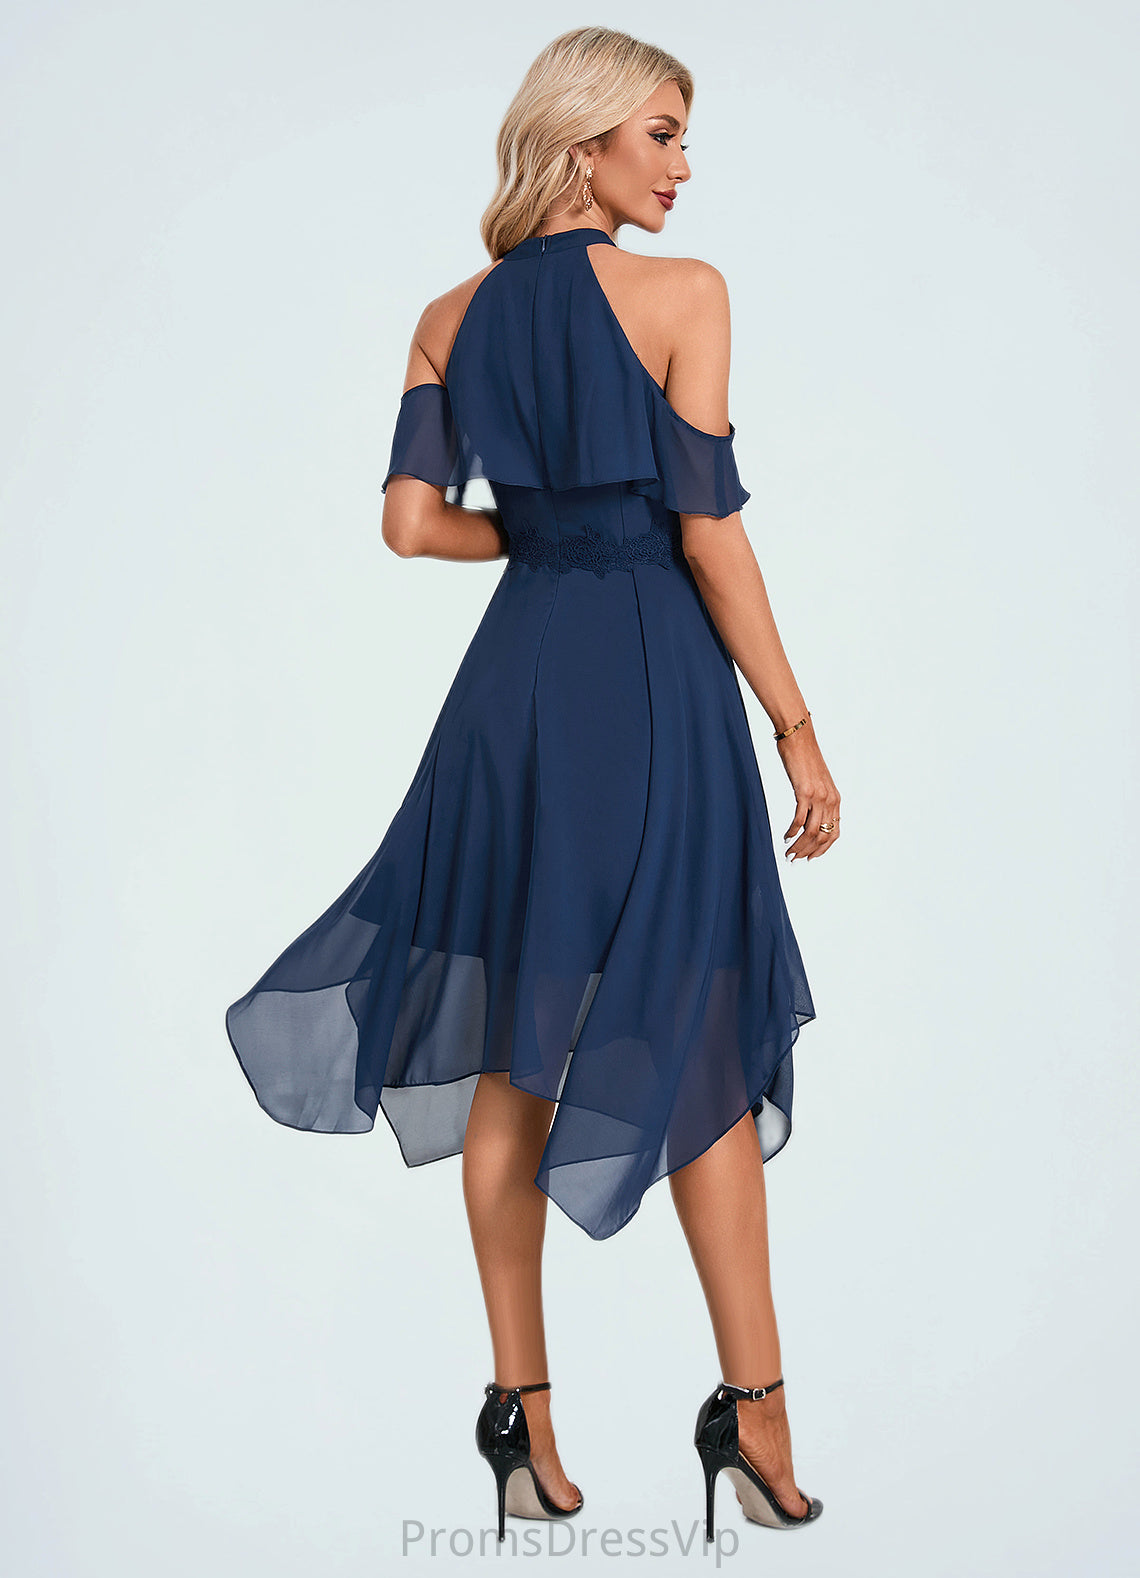 Lexi Appliques Lace Off the Shoulder Elegant A-line Chiffon Asymmetrical Dresses HLP0022489